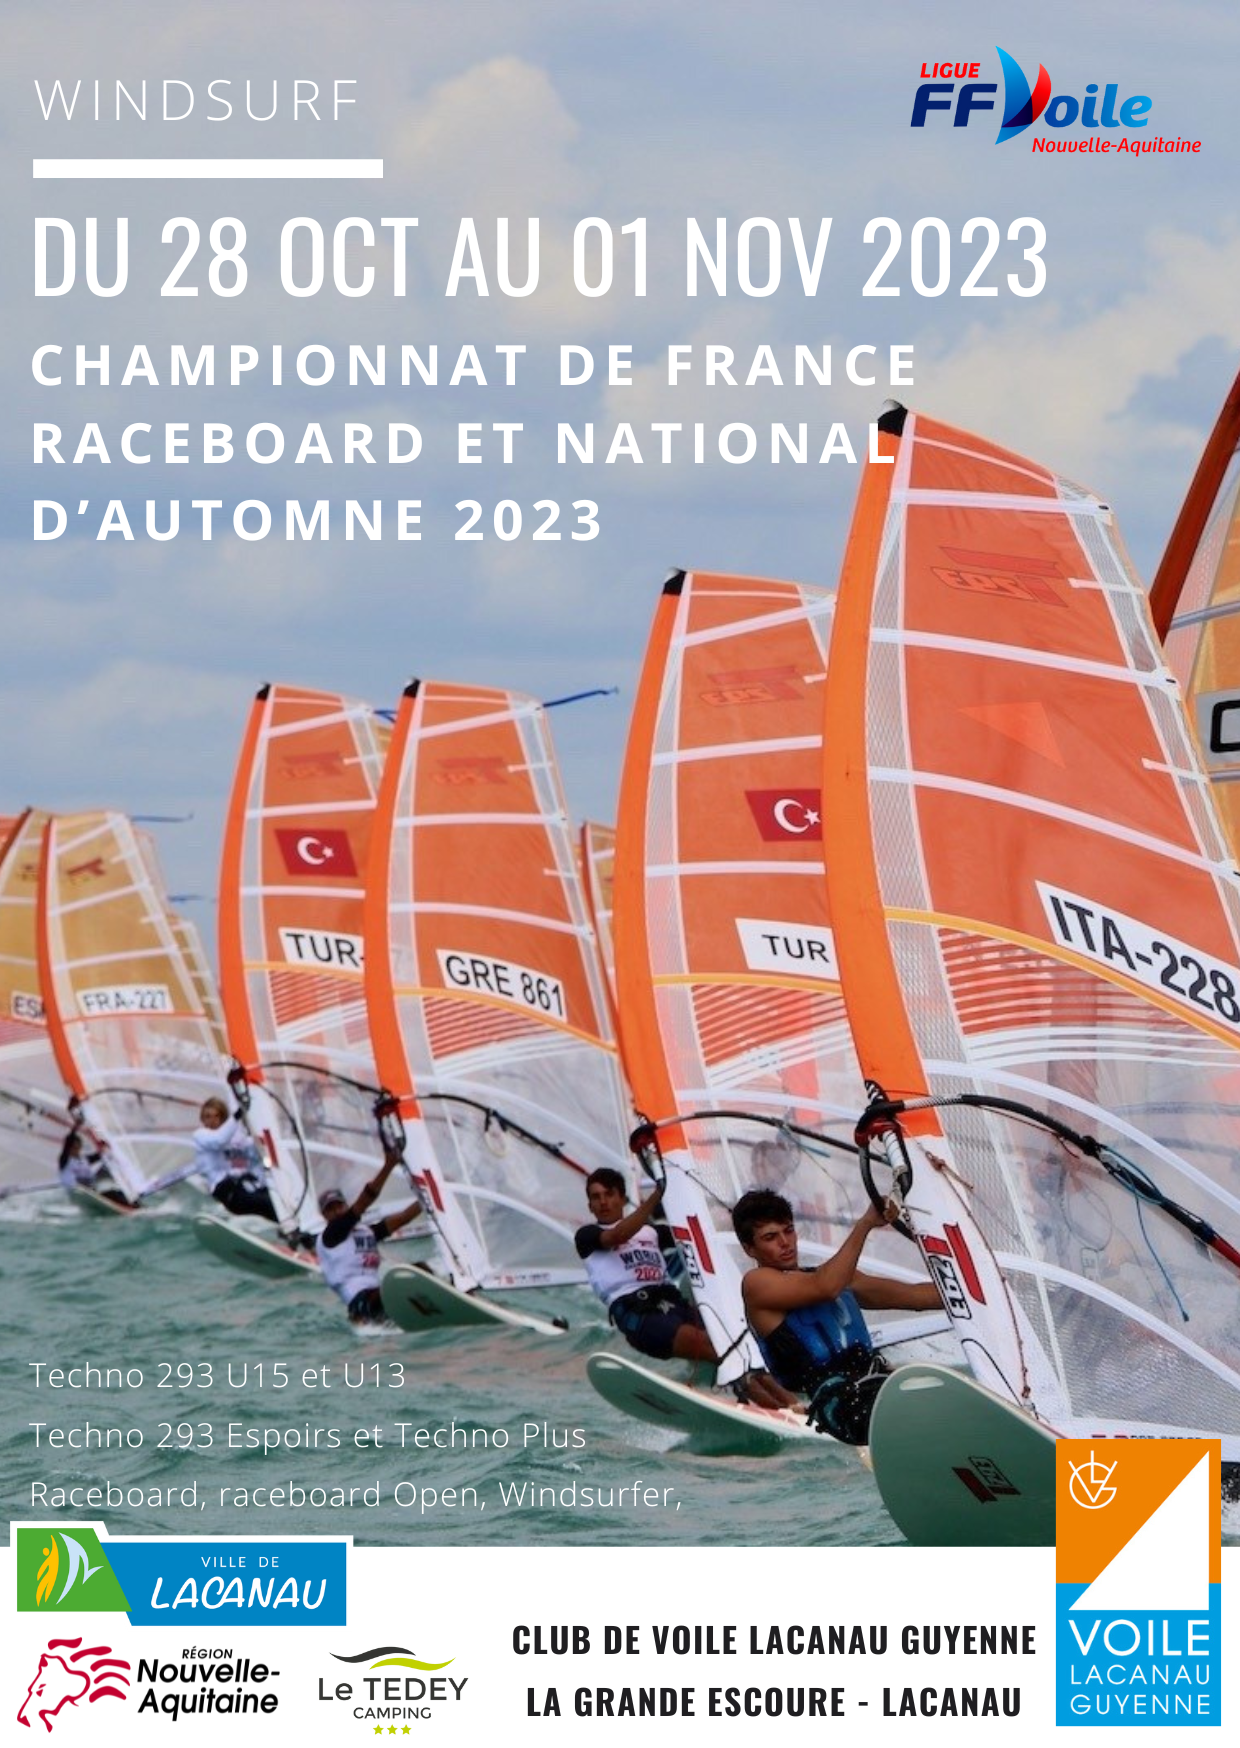 National d’Automne windsurf et Championnat de France Raceboard